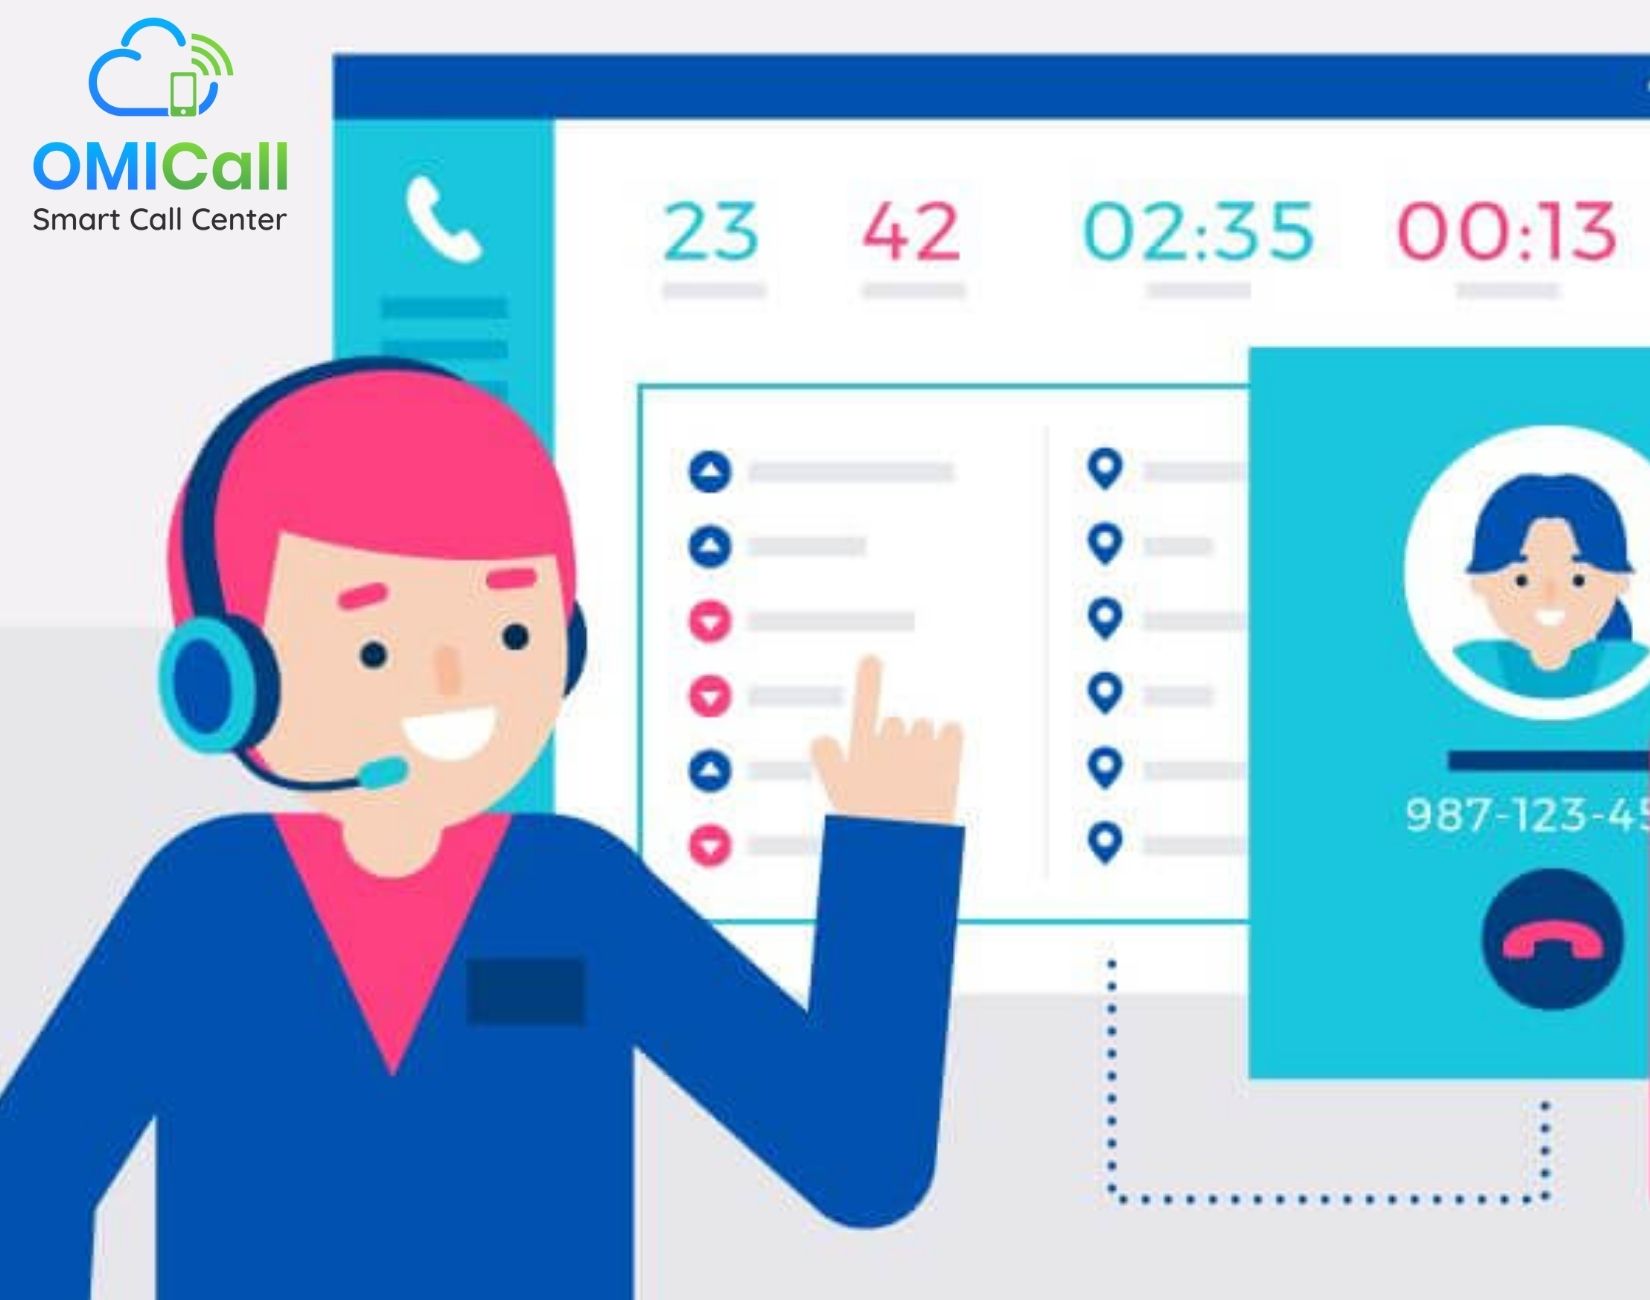 phần mềm call center hoạt động như thế nào?